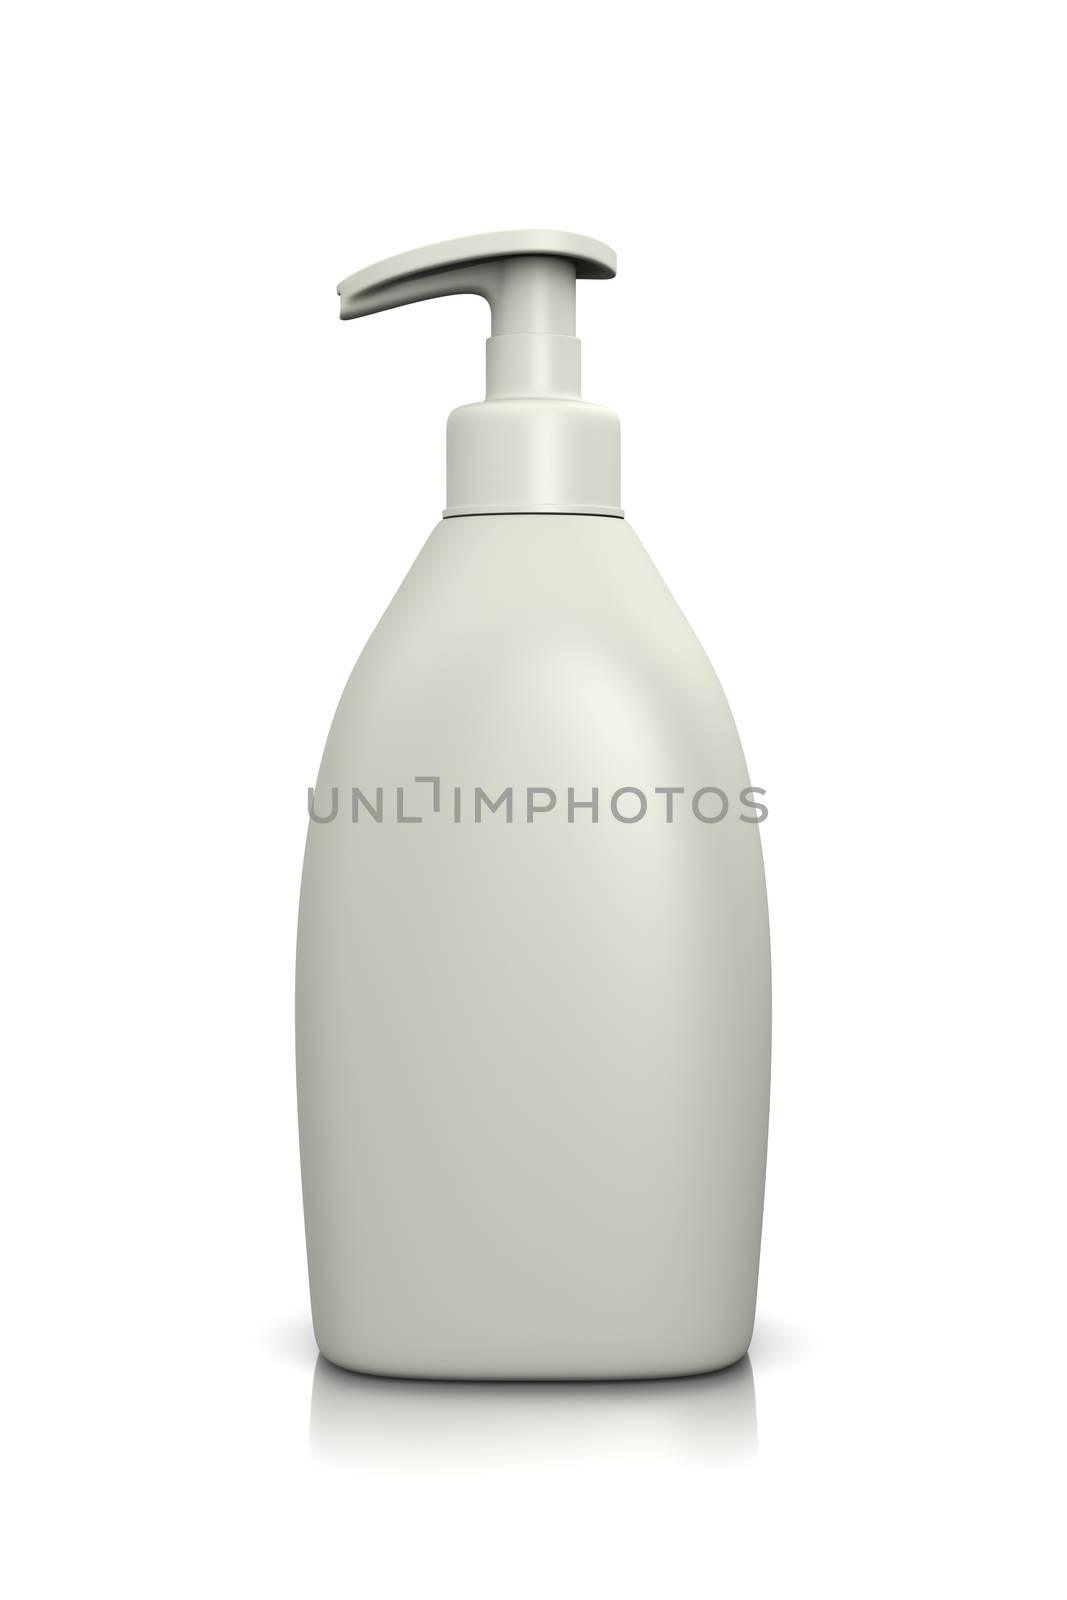 Blank White Liquid Soap Dispenser on White Background 3D Illustration